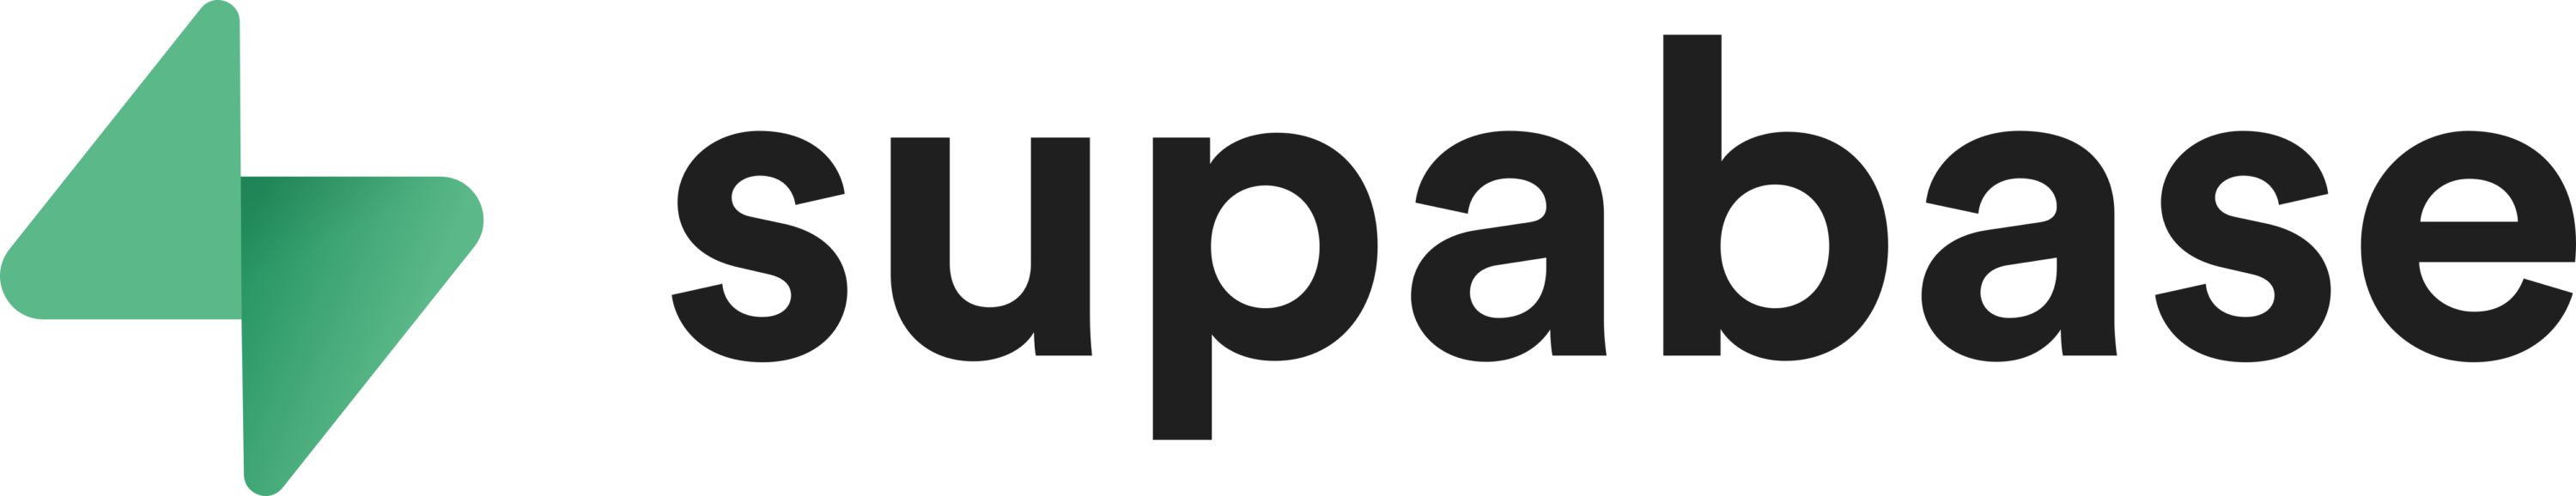 Supabase Logo